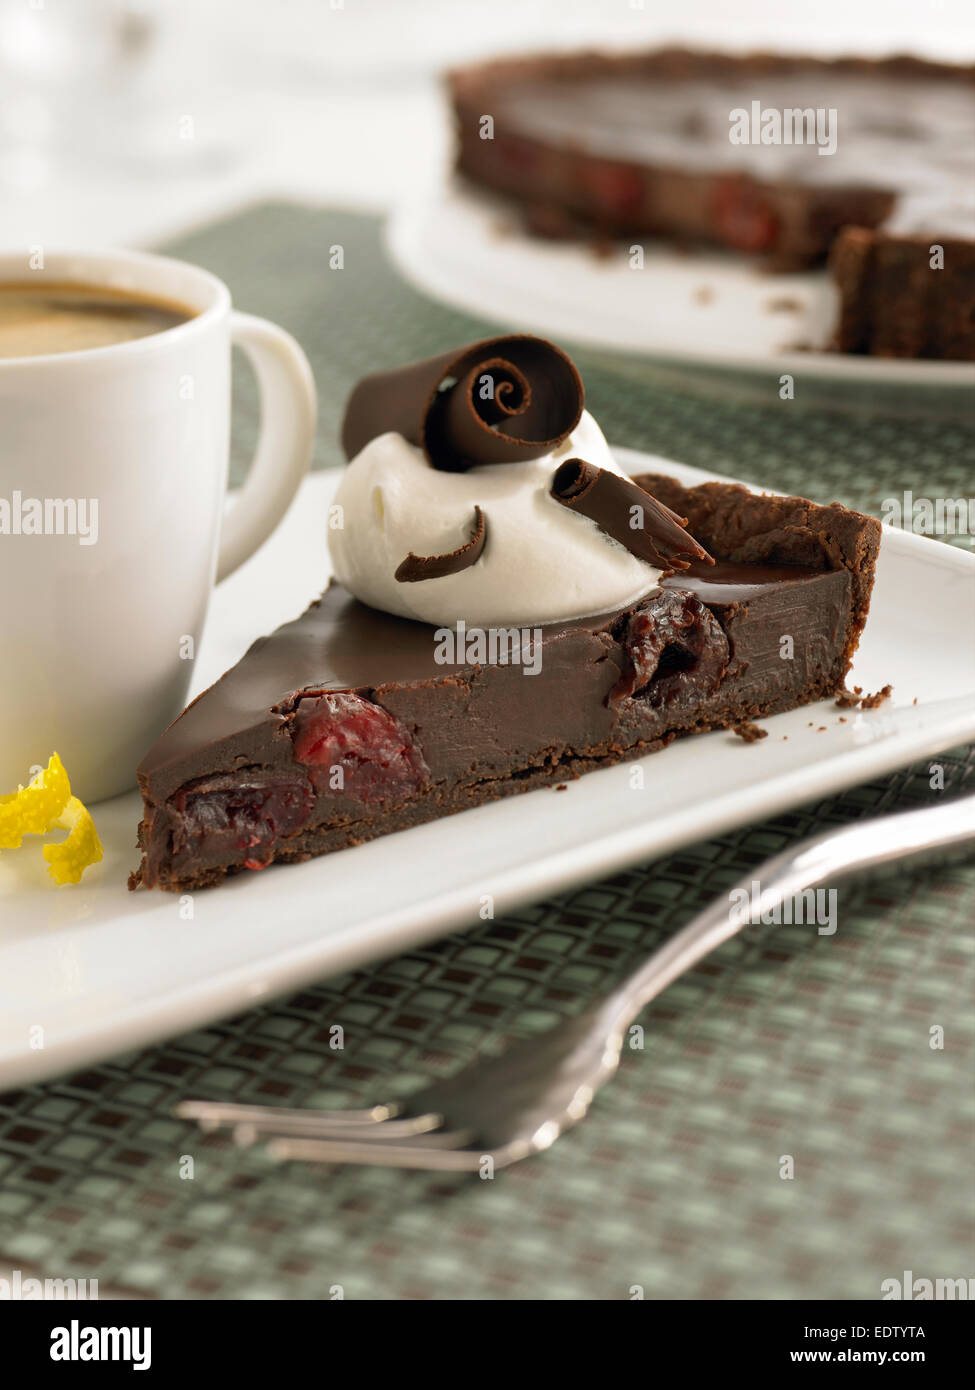 Chcocolate cherry cake Stock Photo